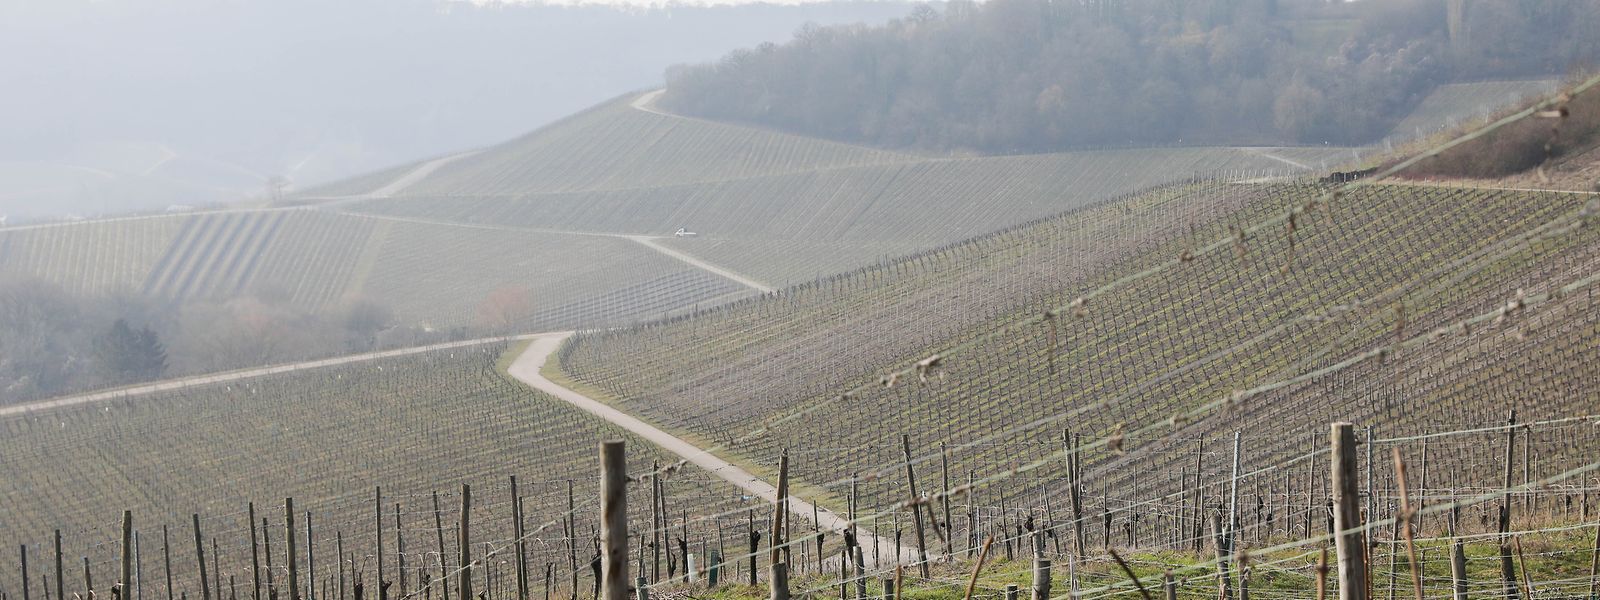 Weinberge bei Bech-Kleinmacher: Der Luxemburger Weinbau hat 2018 hervorragende Qualitäten geerntet, muss sich bei der Vermarktung aber anstrengen. 